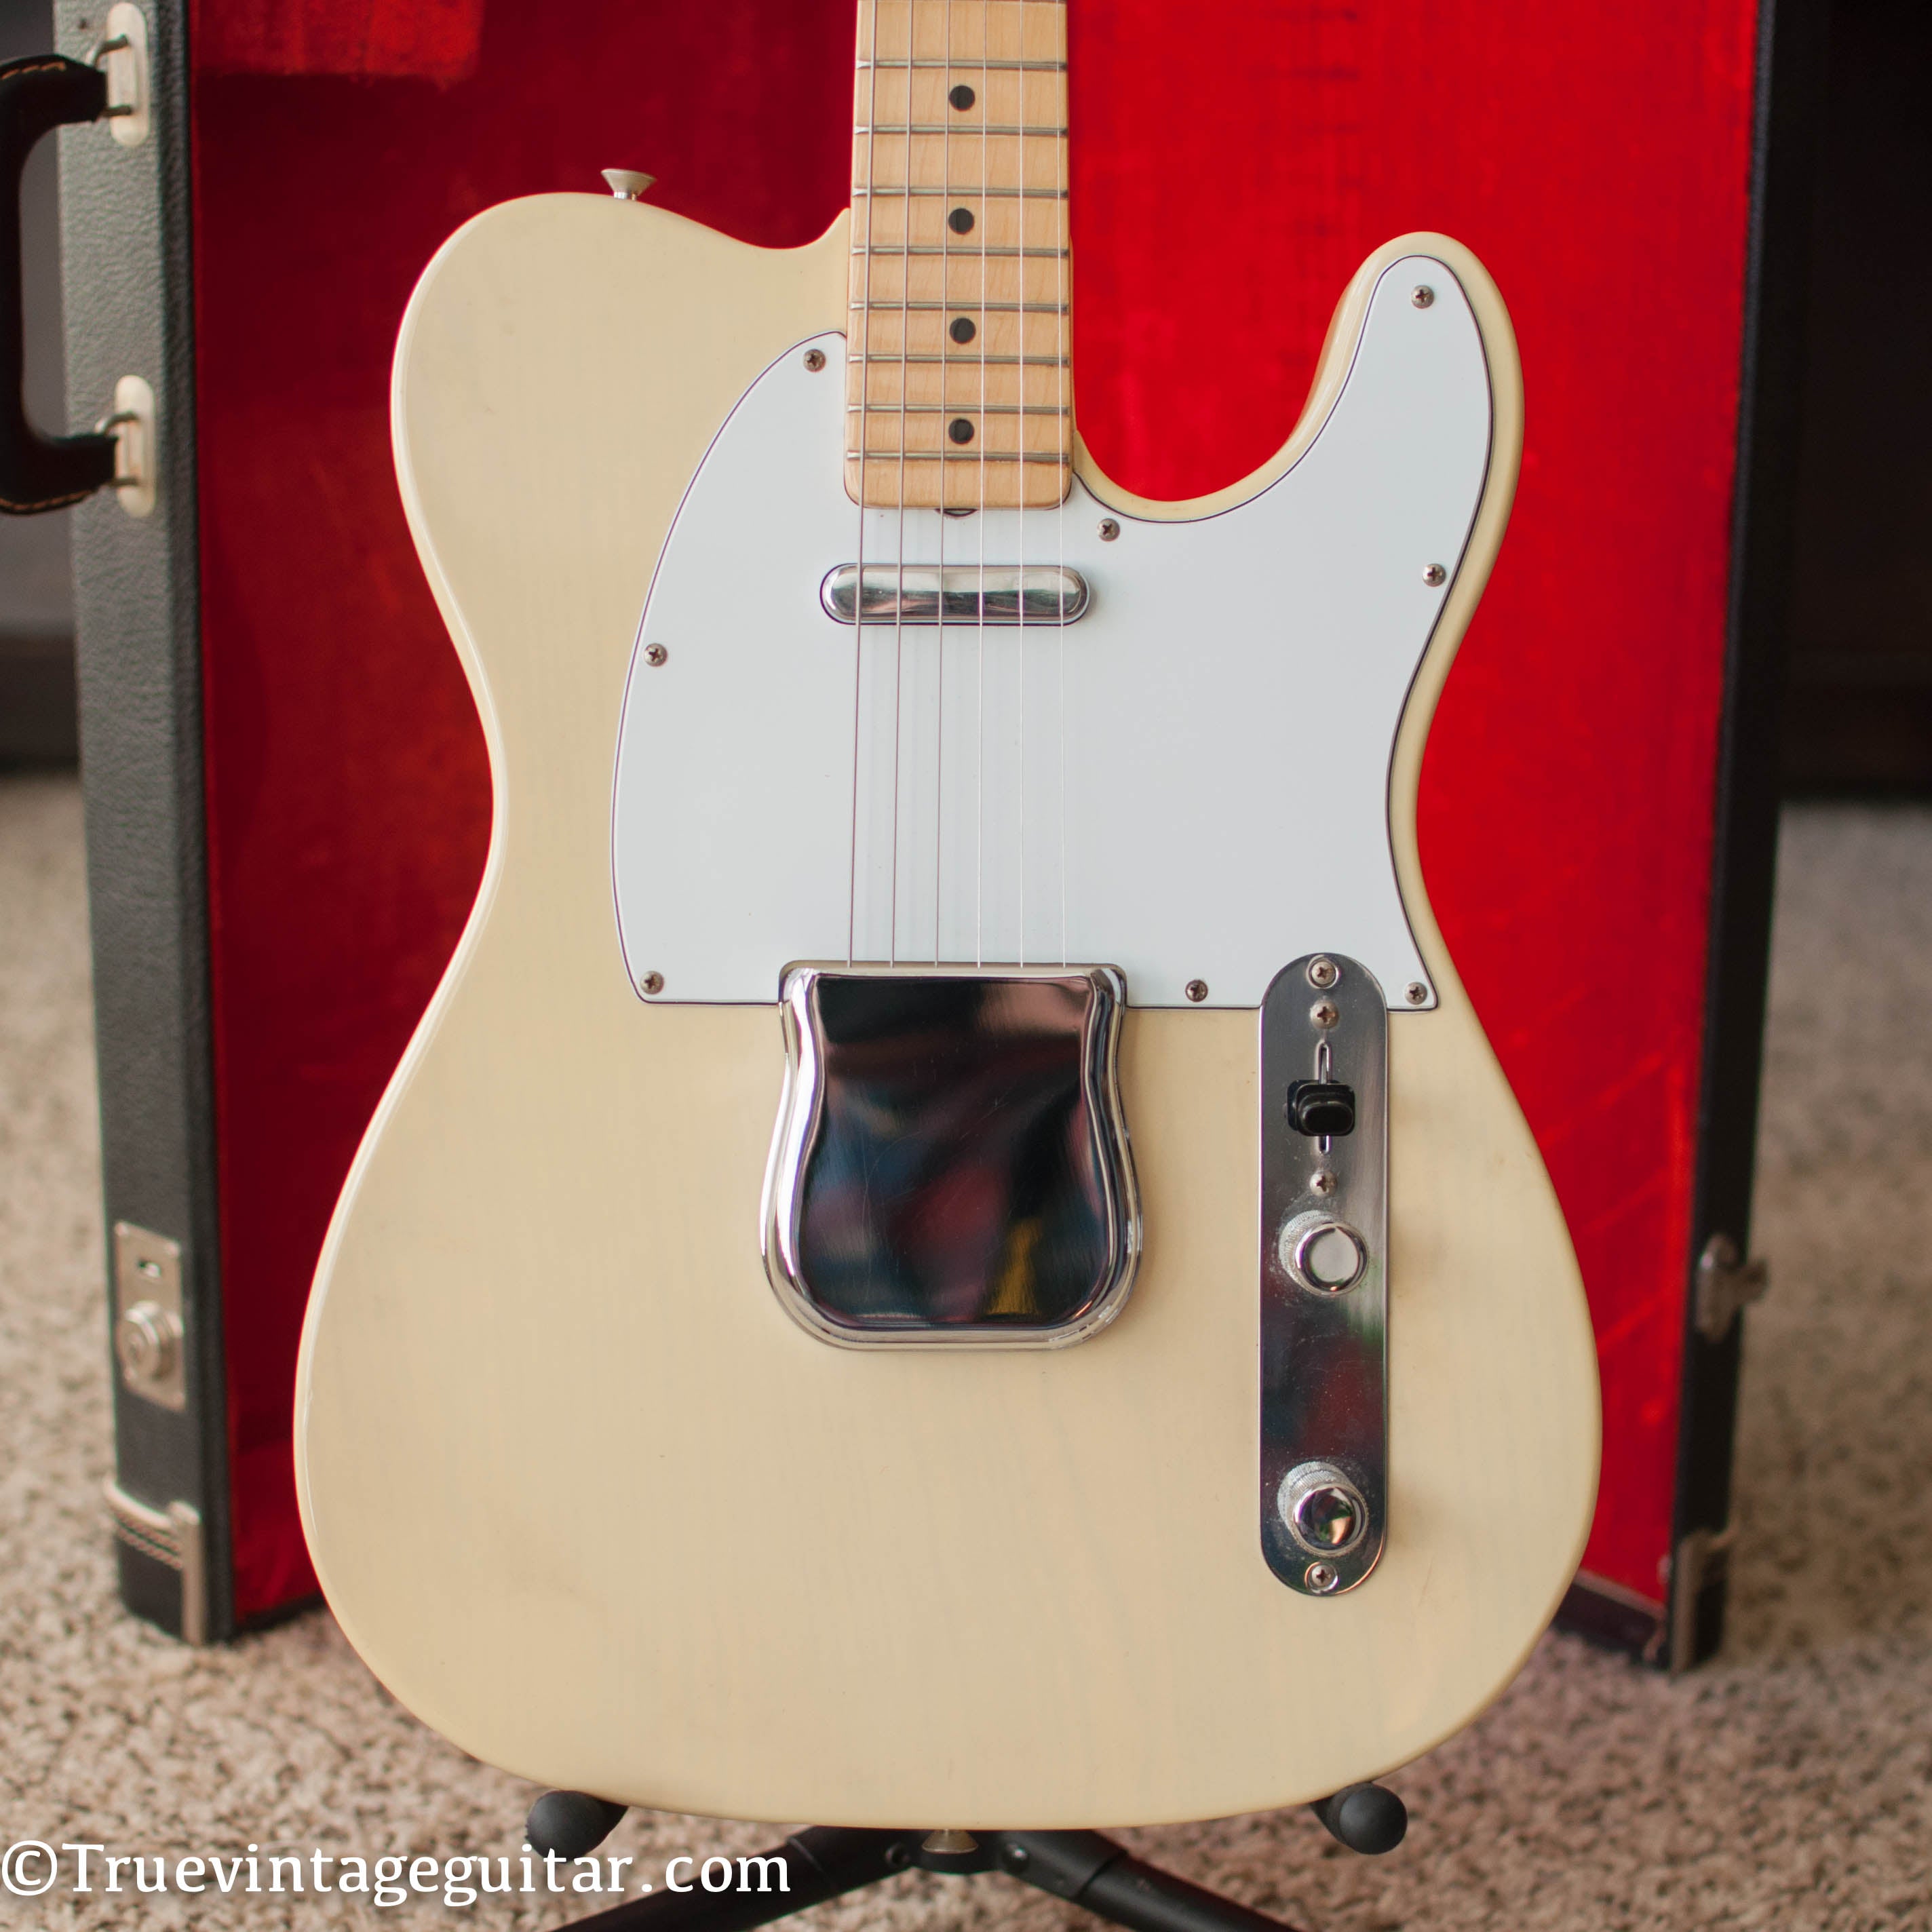 Vintage 1973 Fender Telecaster guitar Blond